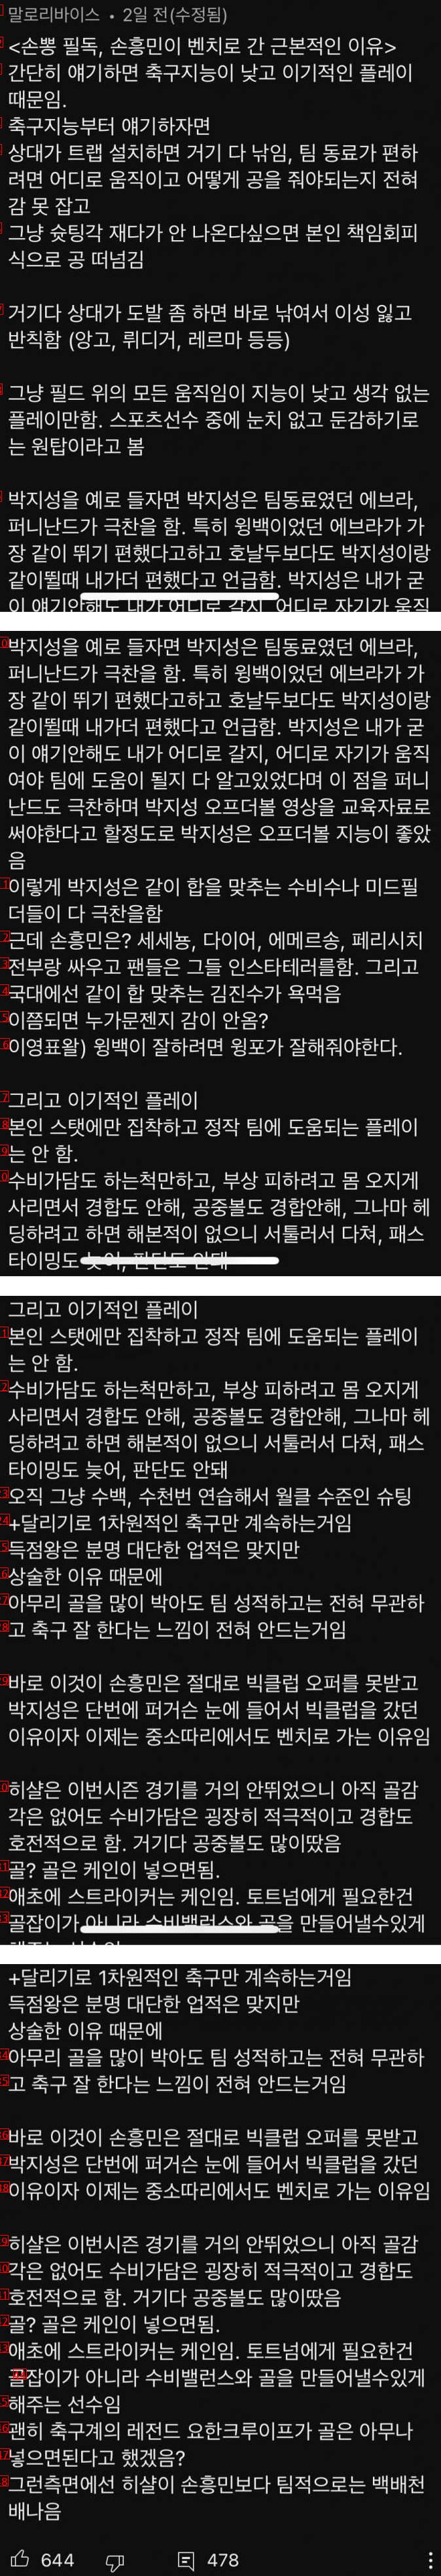 댓글 500개 달린 손흥민 저격 글